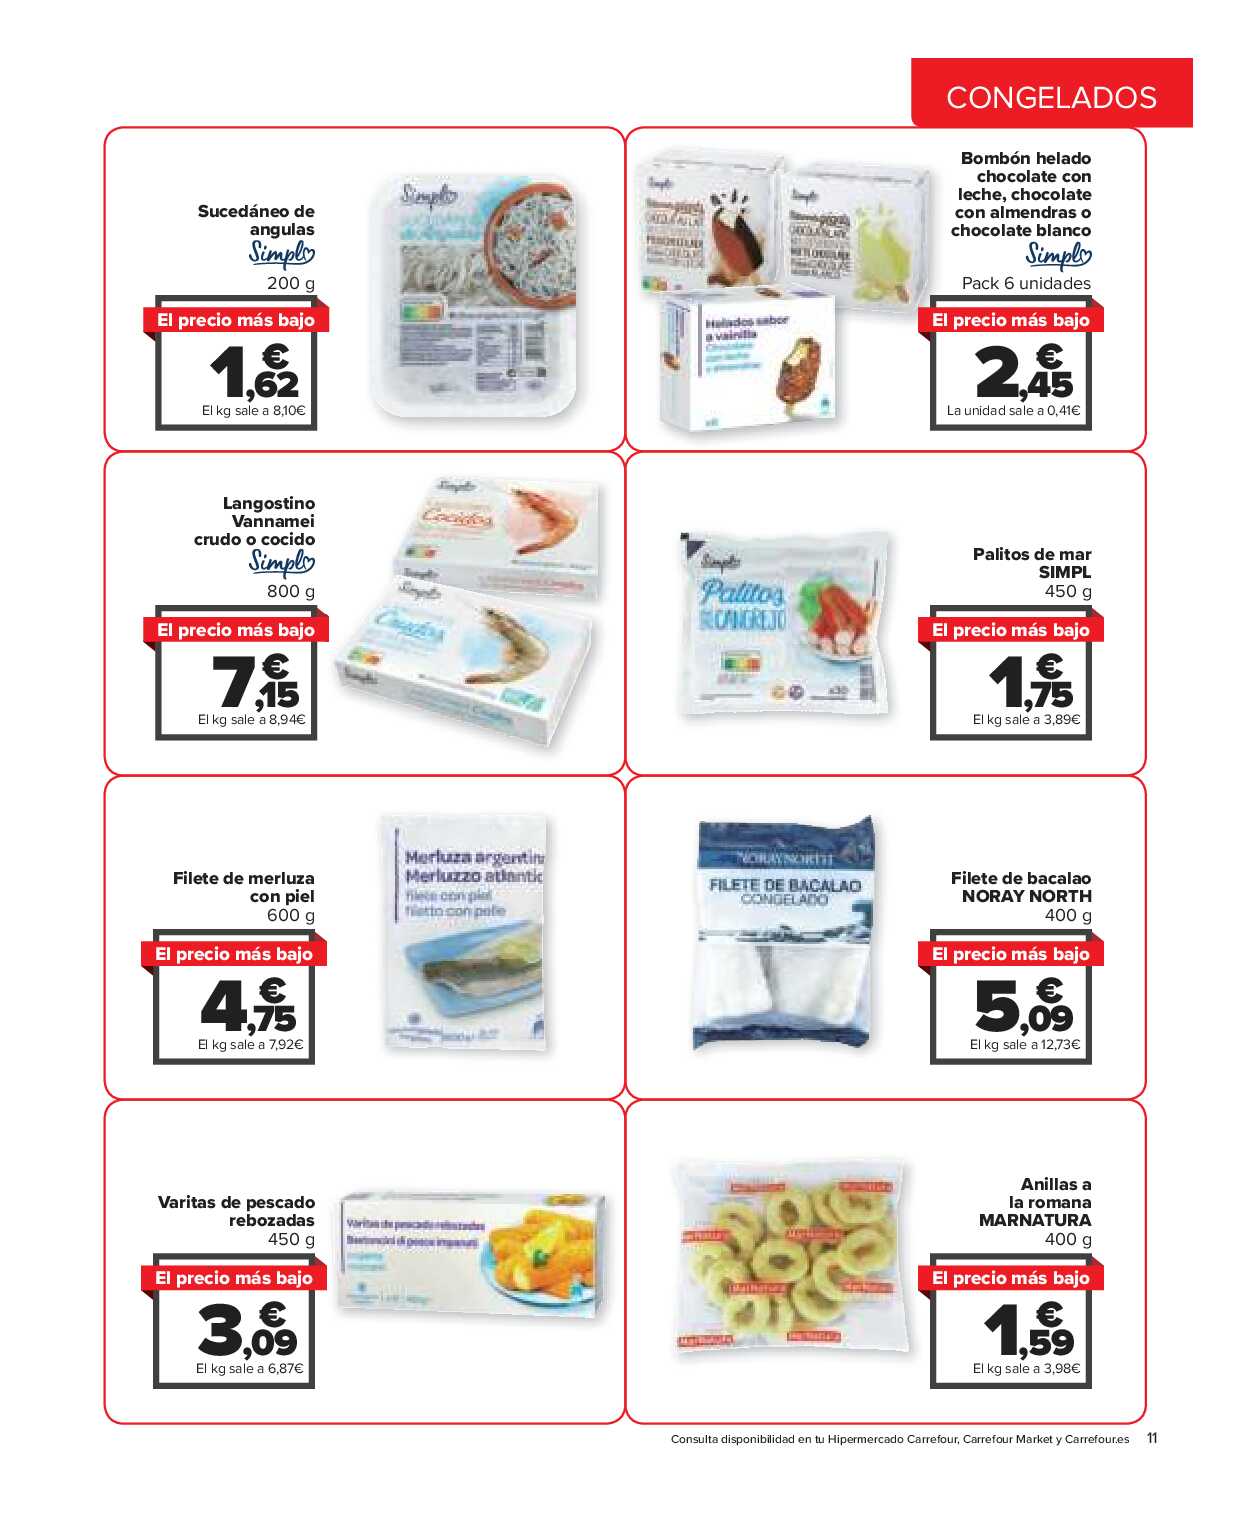 El precio más bajo Carrefour. Página 11